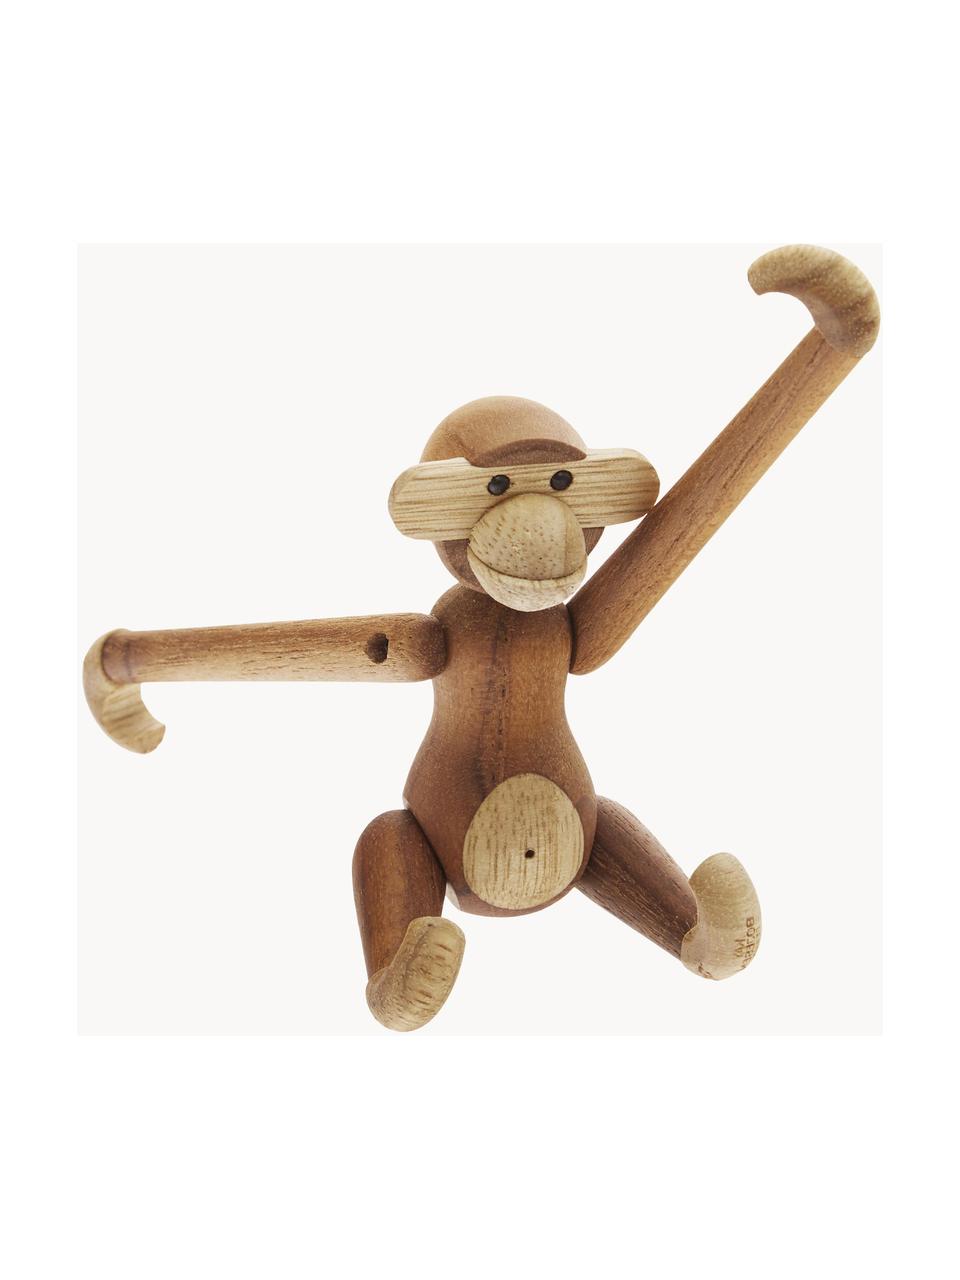 Handgefertigtes Deko-Objekt Monkey aus Teakholz, H 10 cm, Teakholz, Limbaholz, lackiert

Dieses Produkt wird aus nachhaltig gewonnenem, FSC®-zertifiziertem Holz gefertigt., Teakholz, Limbaholz, B 10 x H 10 cm